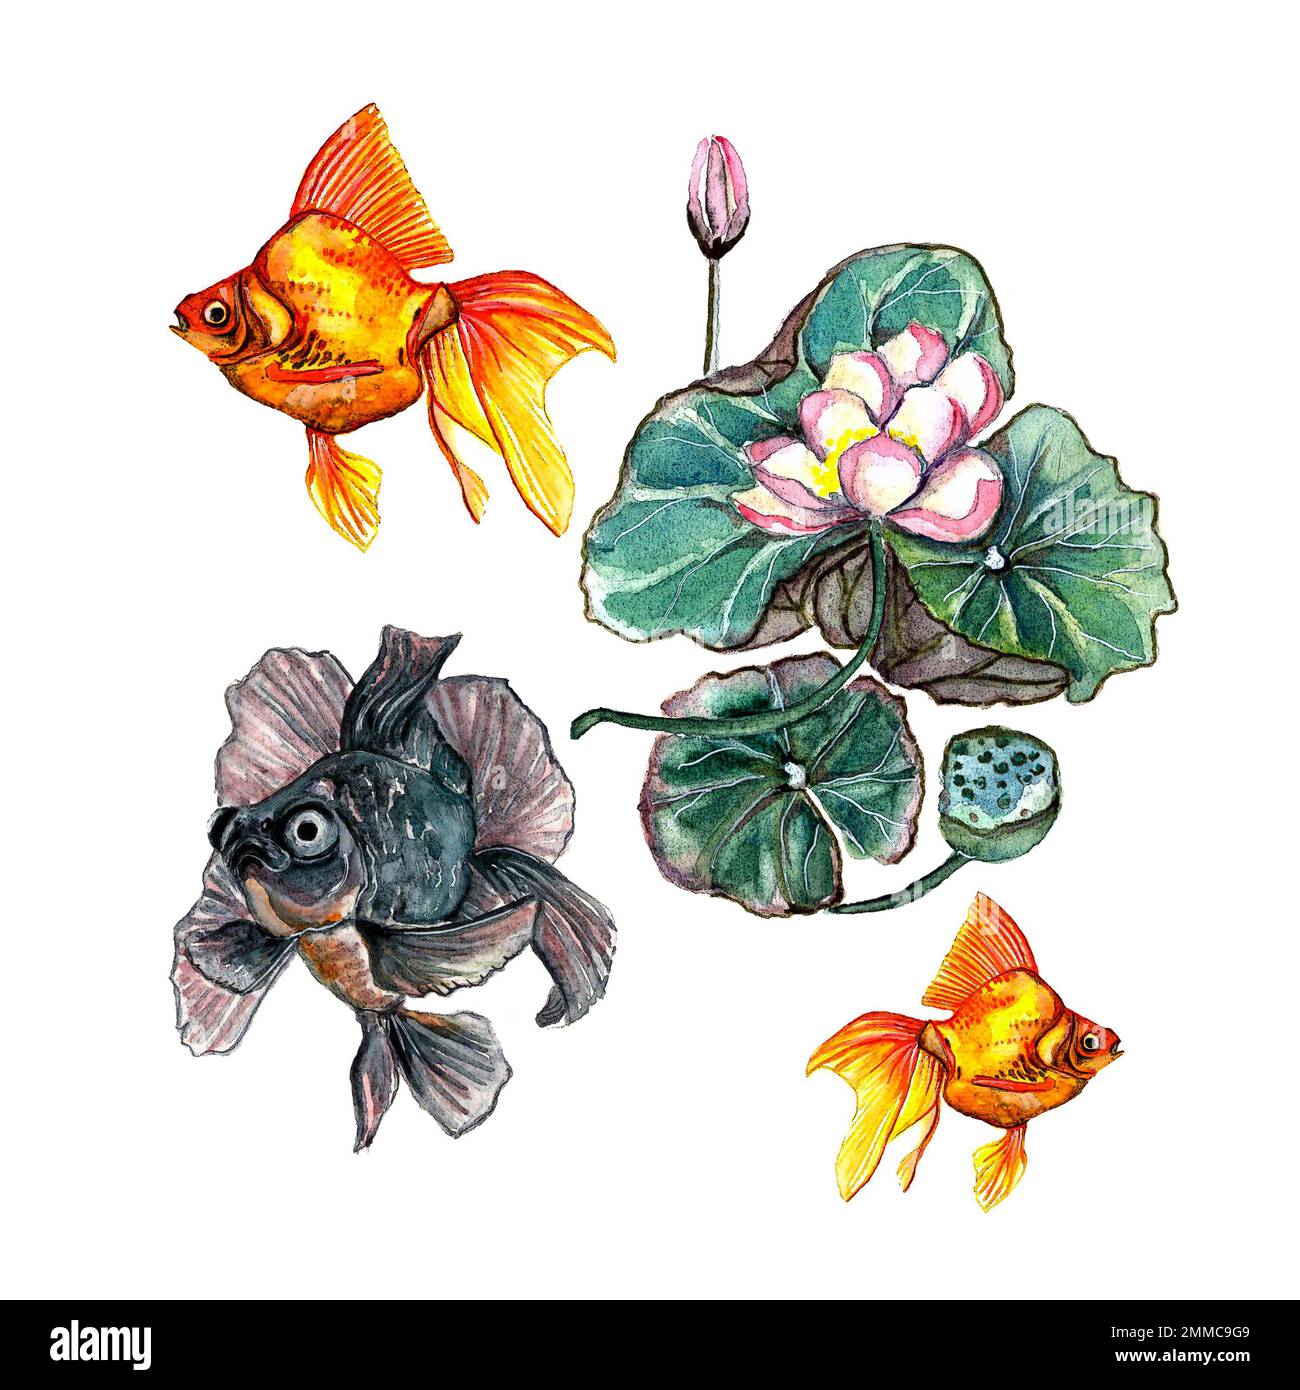 Aquarelle ensemble dessiné à la main de voiltail d'aquarium, de télescope de poissons rouges et de fleur de lotus rose sur fond blanc, isolé Banque D'Images